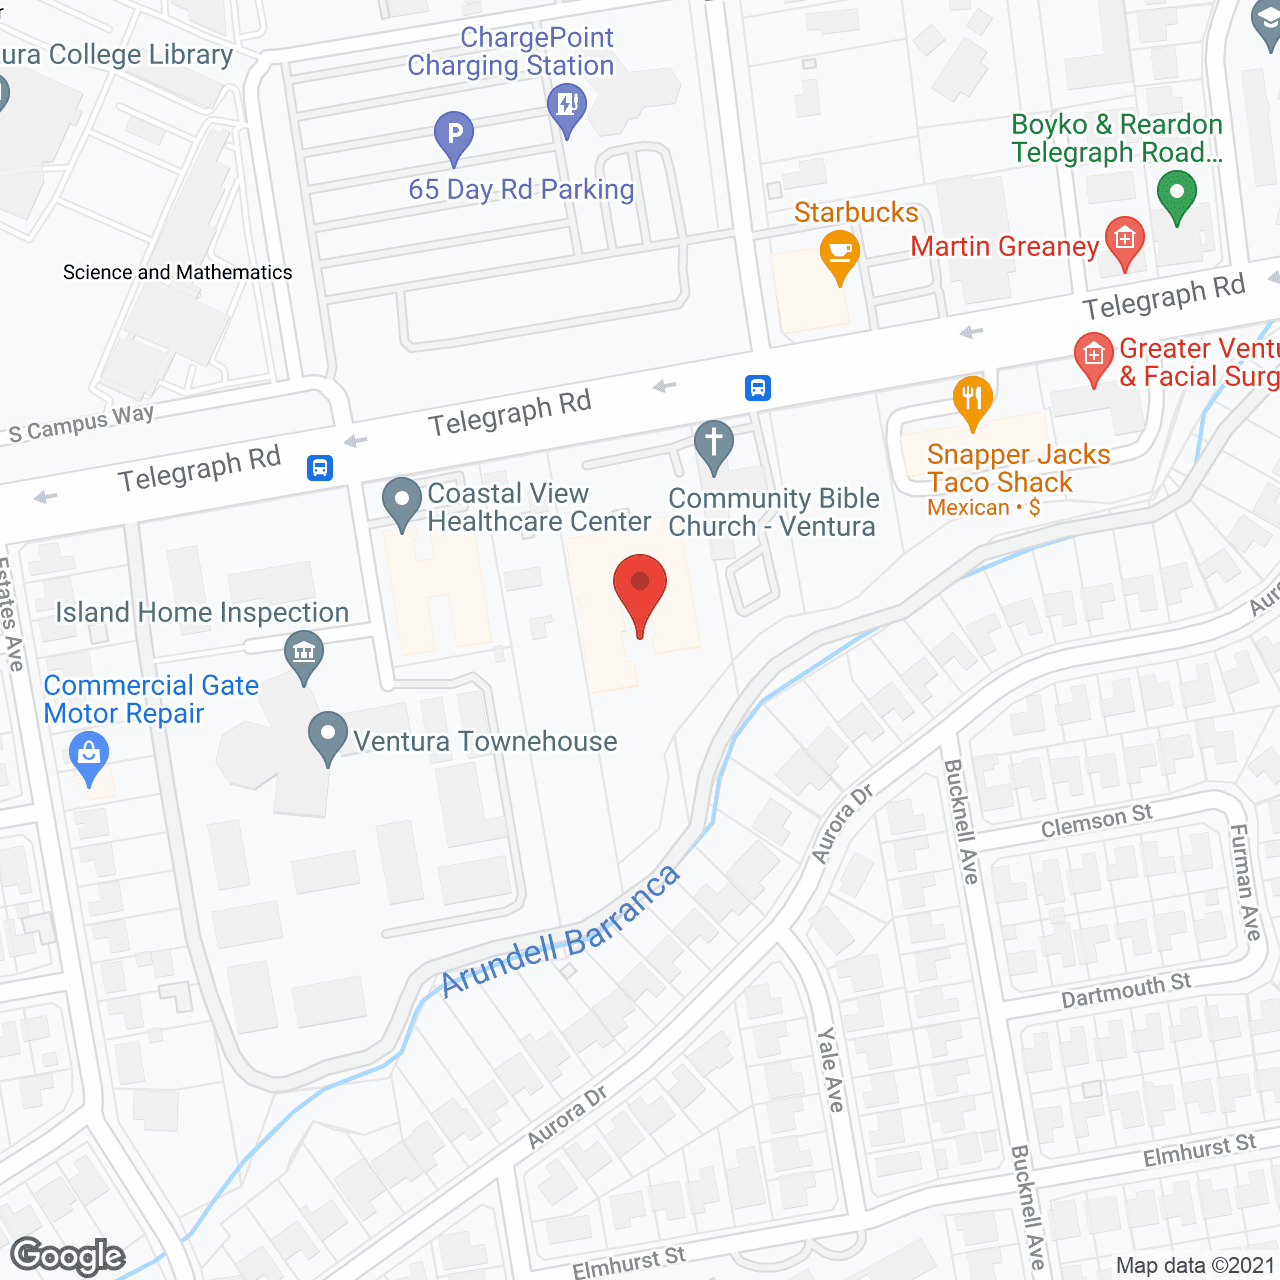 Aegis of Ventura in google map